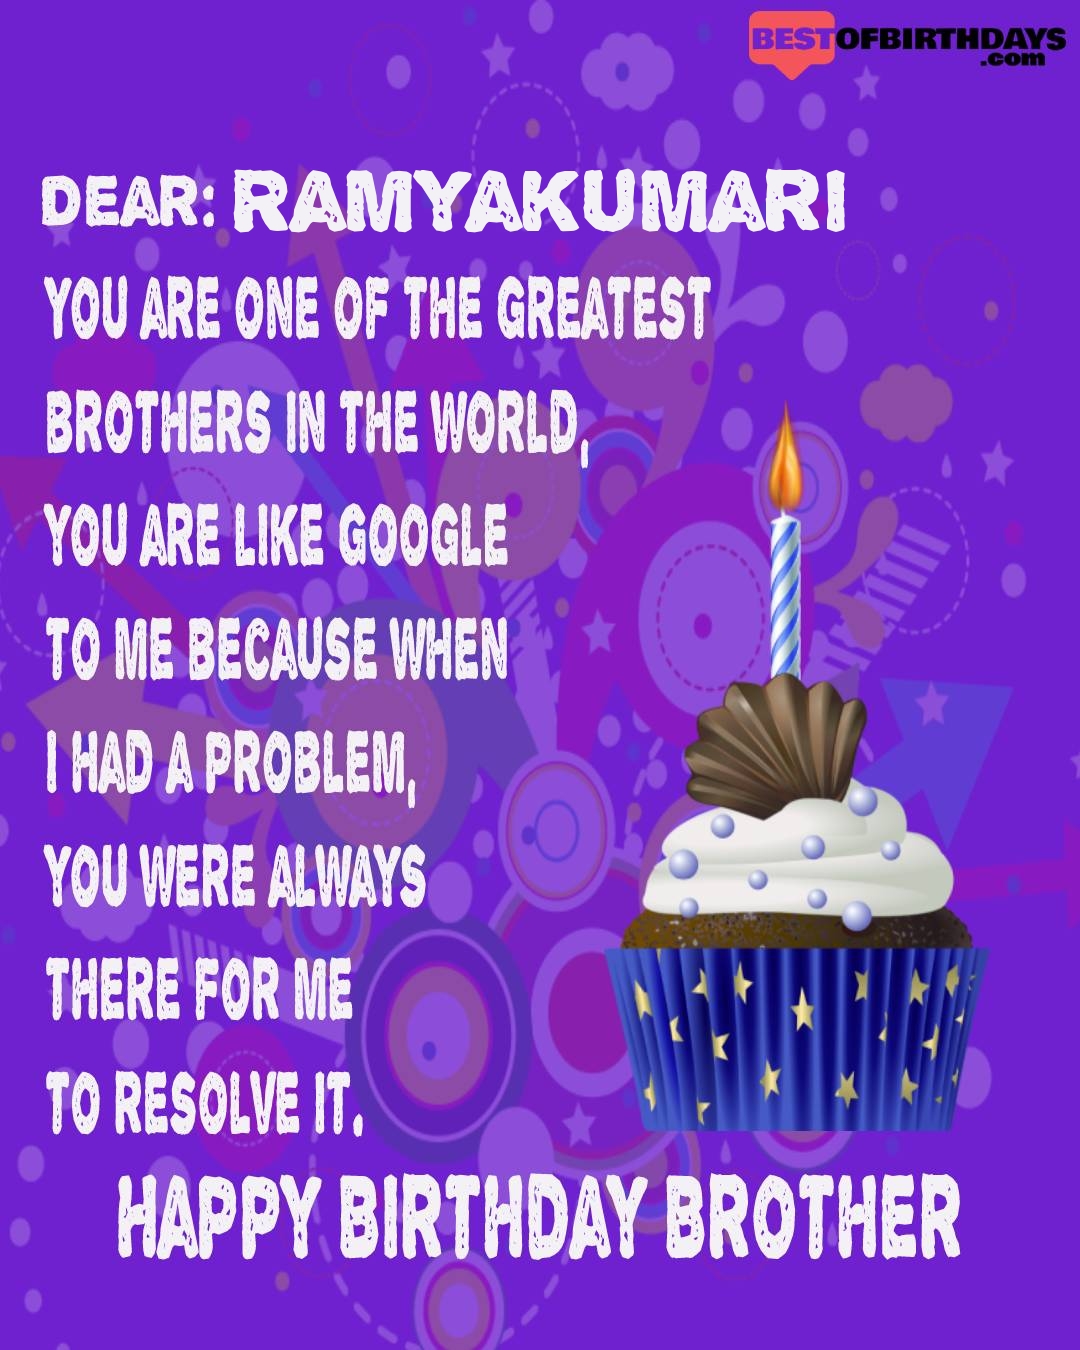 Happy birthday ramyakumari bhai brother bro